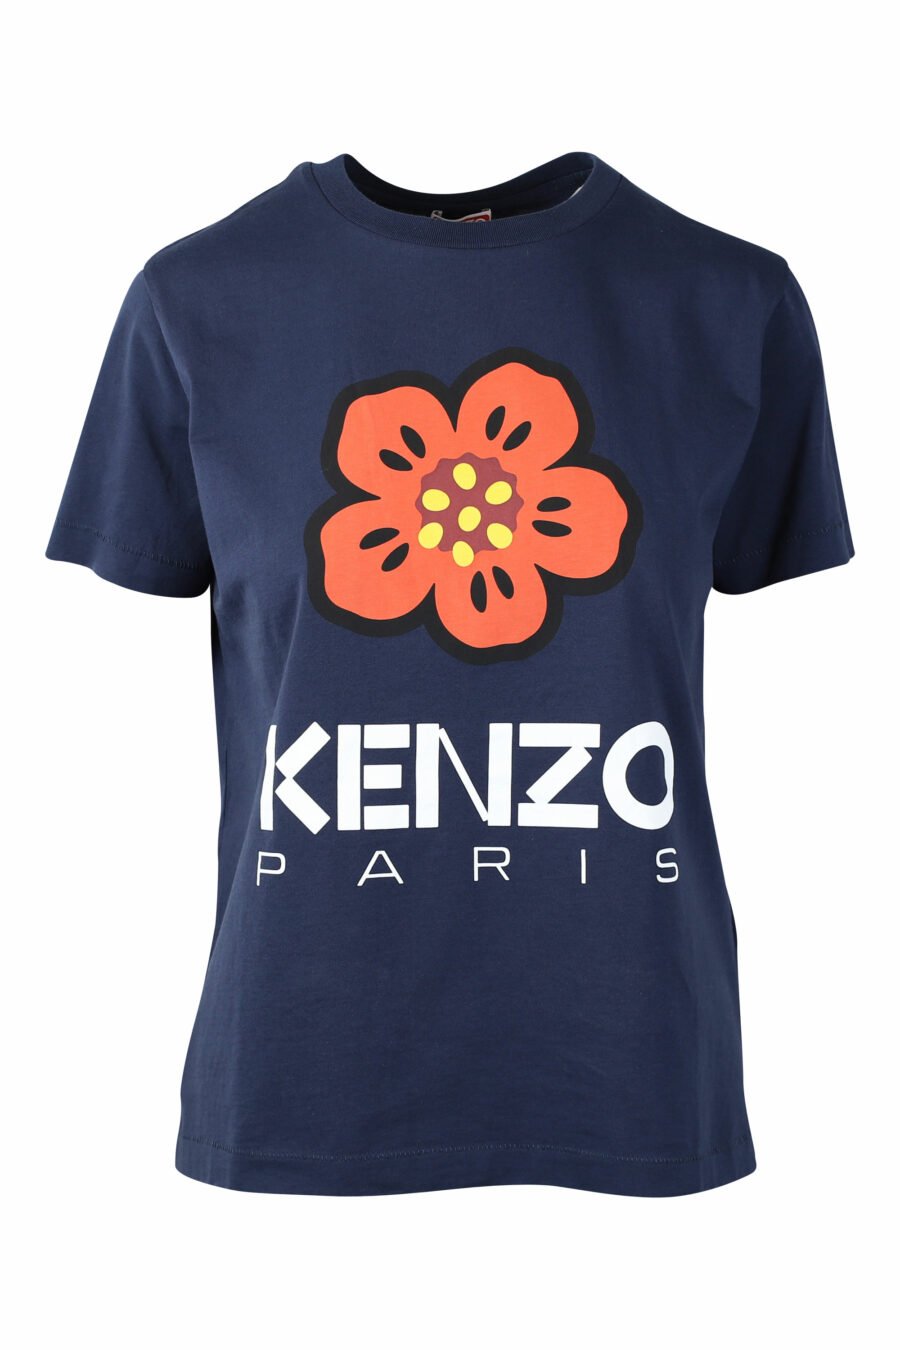 T-shirt azul com maxilogo de flores cor de laranja - IMG 1497